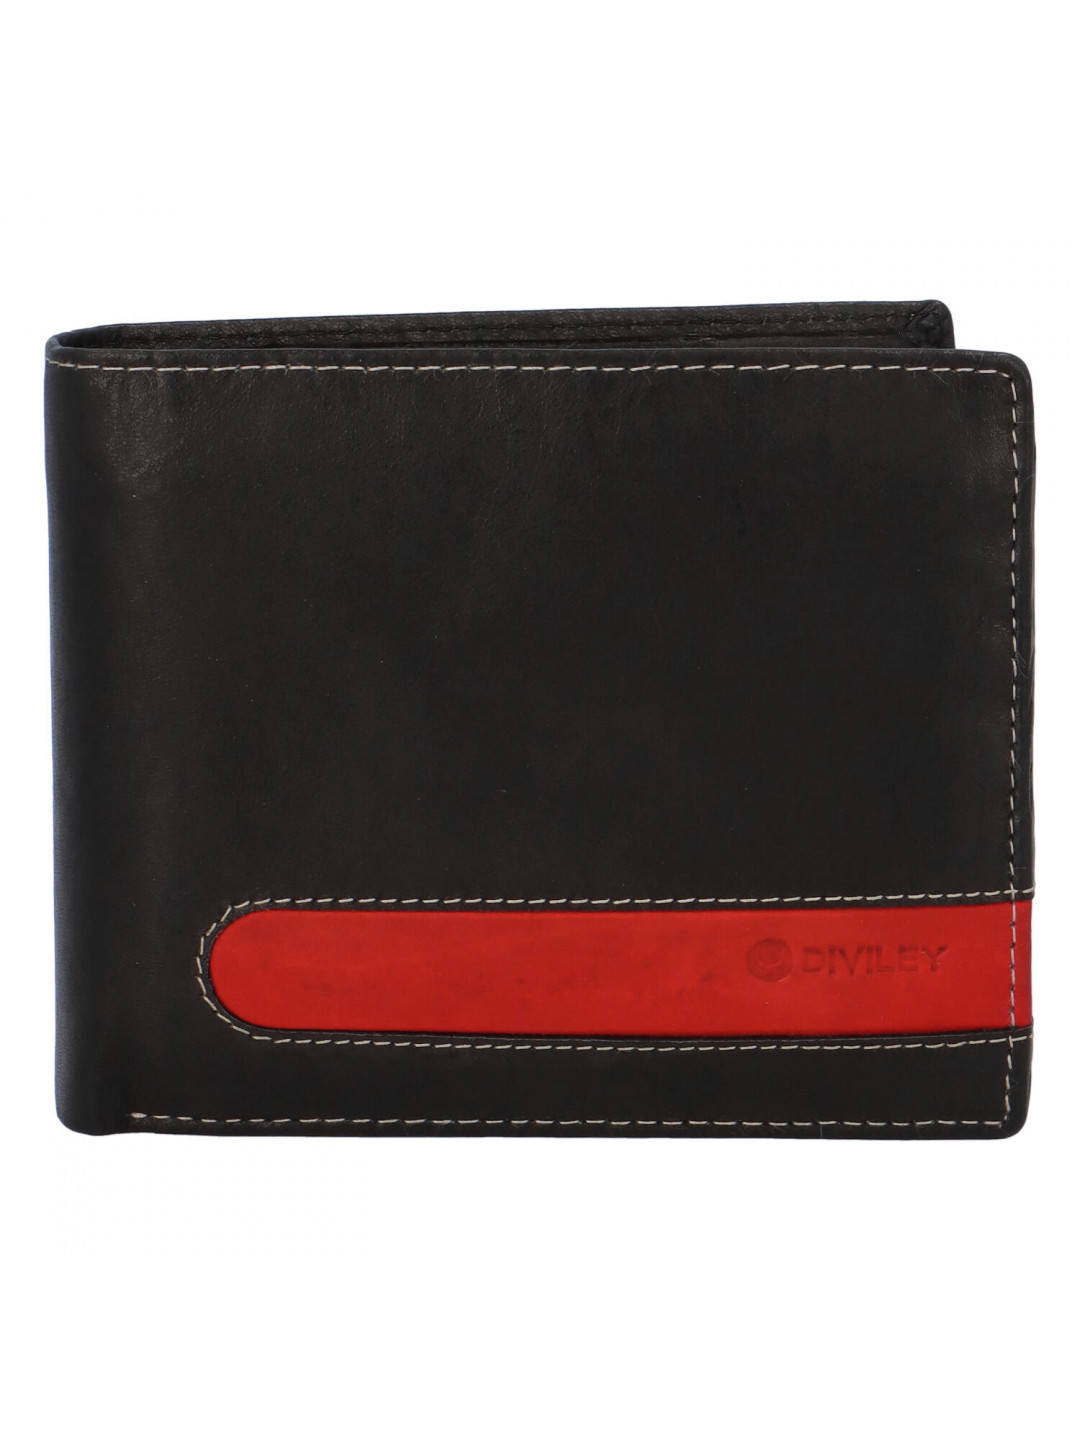 Pánská kožená peněženka černá – Diviley 2131 RED